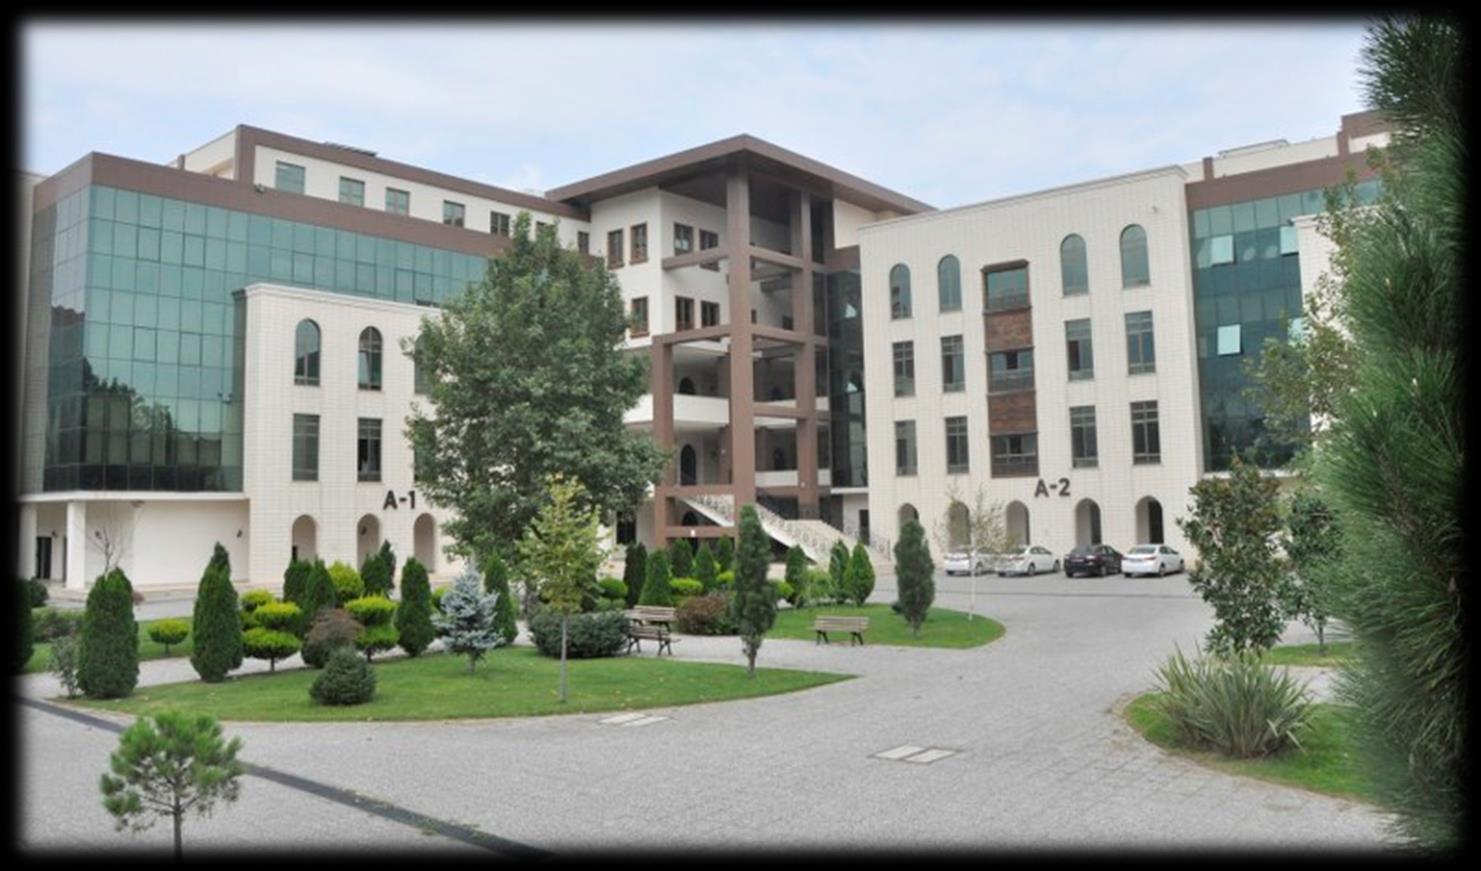 Eğitim Ortamı Bölümümüzde eğitim Mimar Sinan Kampüsü, A-1 Blokta, modern derslik ve laboratuvarlarda gerçekleştirilmektedir.